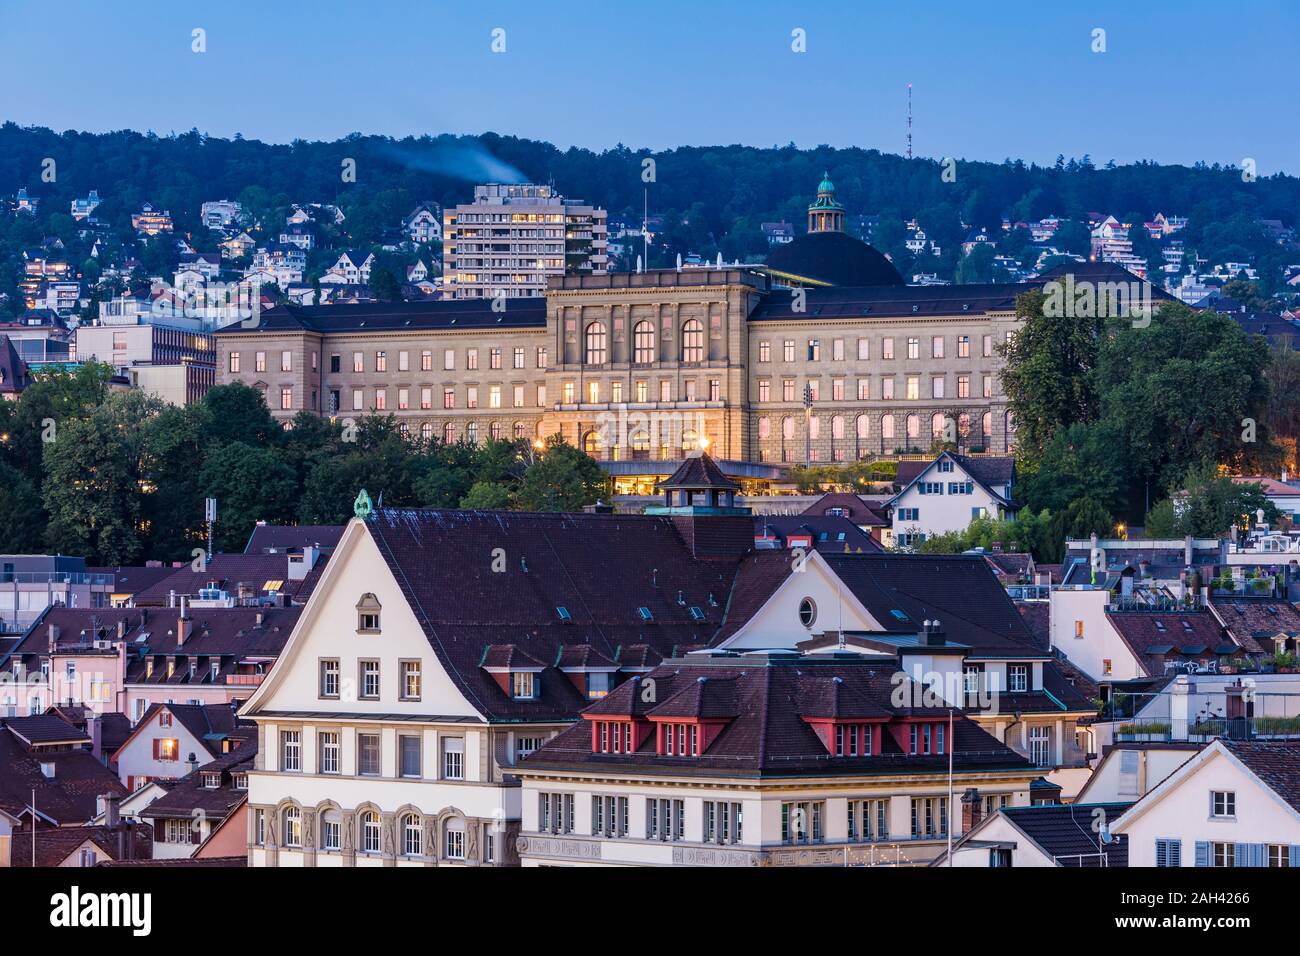 Switzerland, Canton of Zurich, Zurich, Swiss Federal Institute of Technology in Zurich at dusk Stock Photo